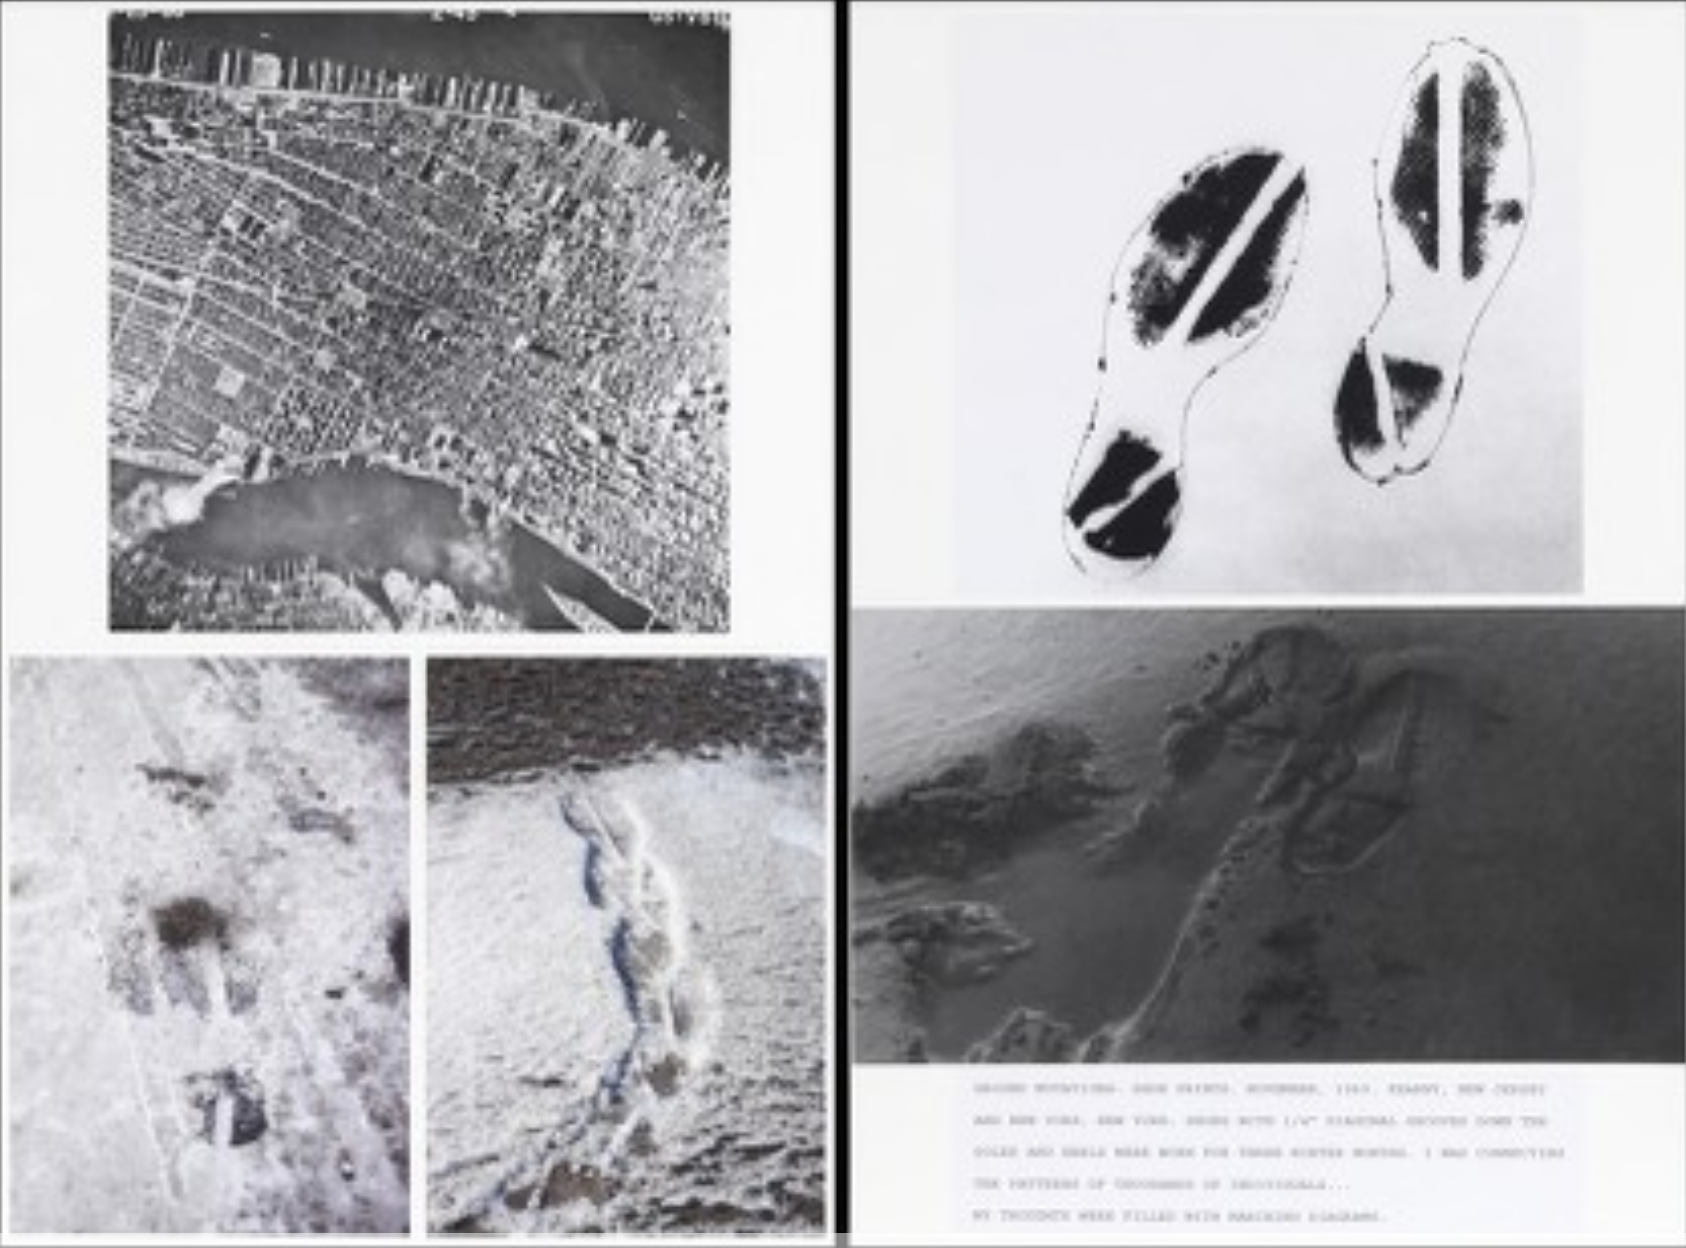 photos of footprints